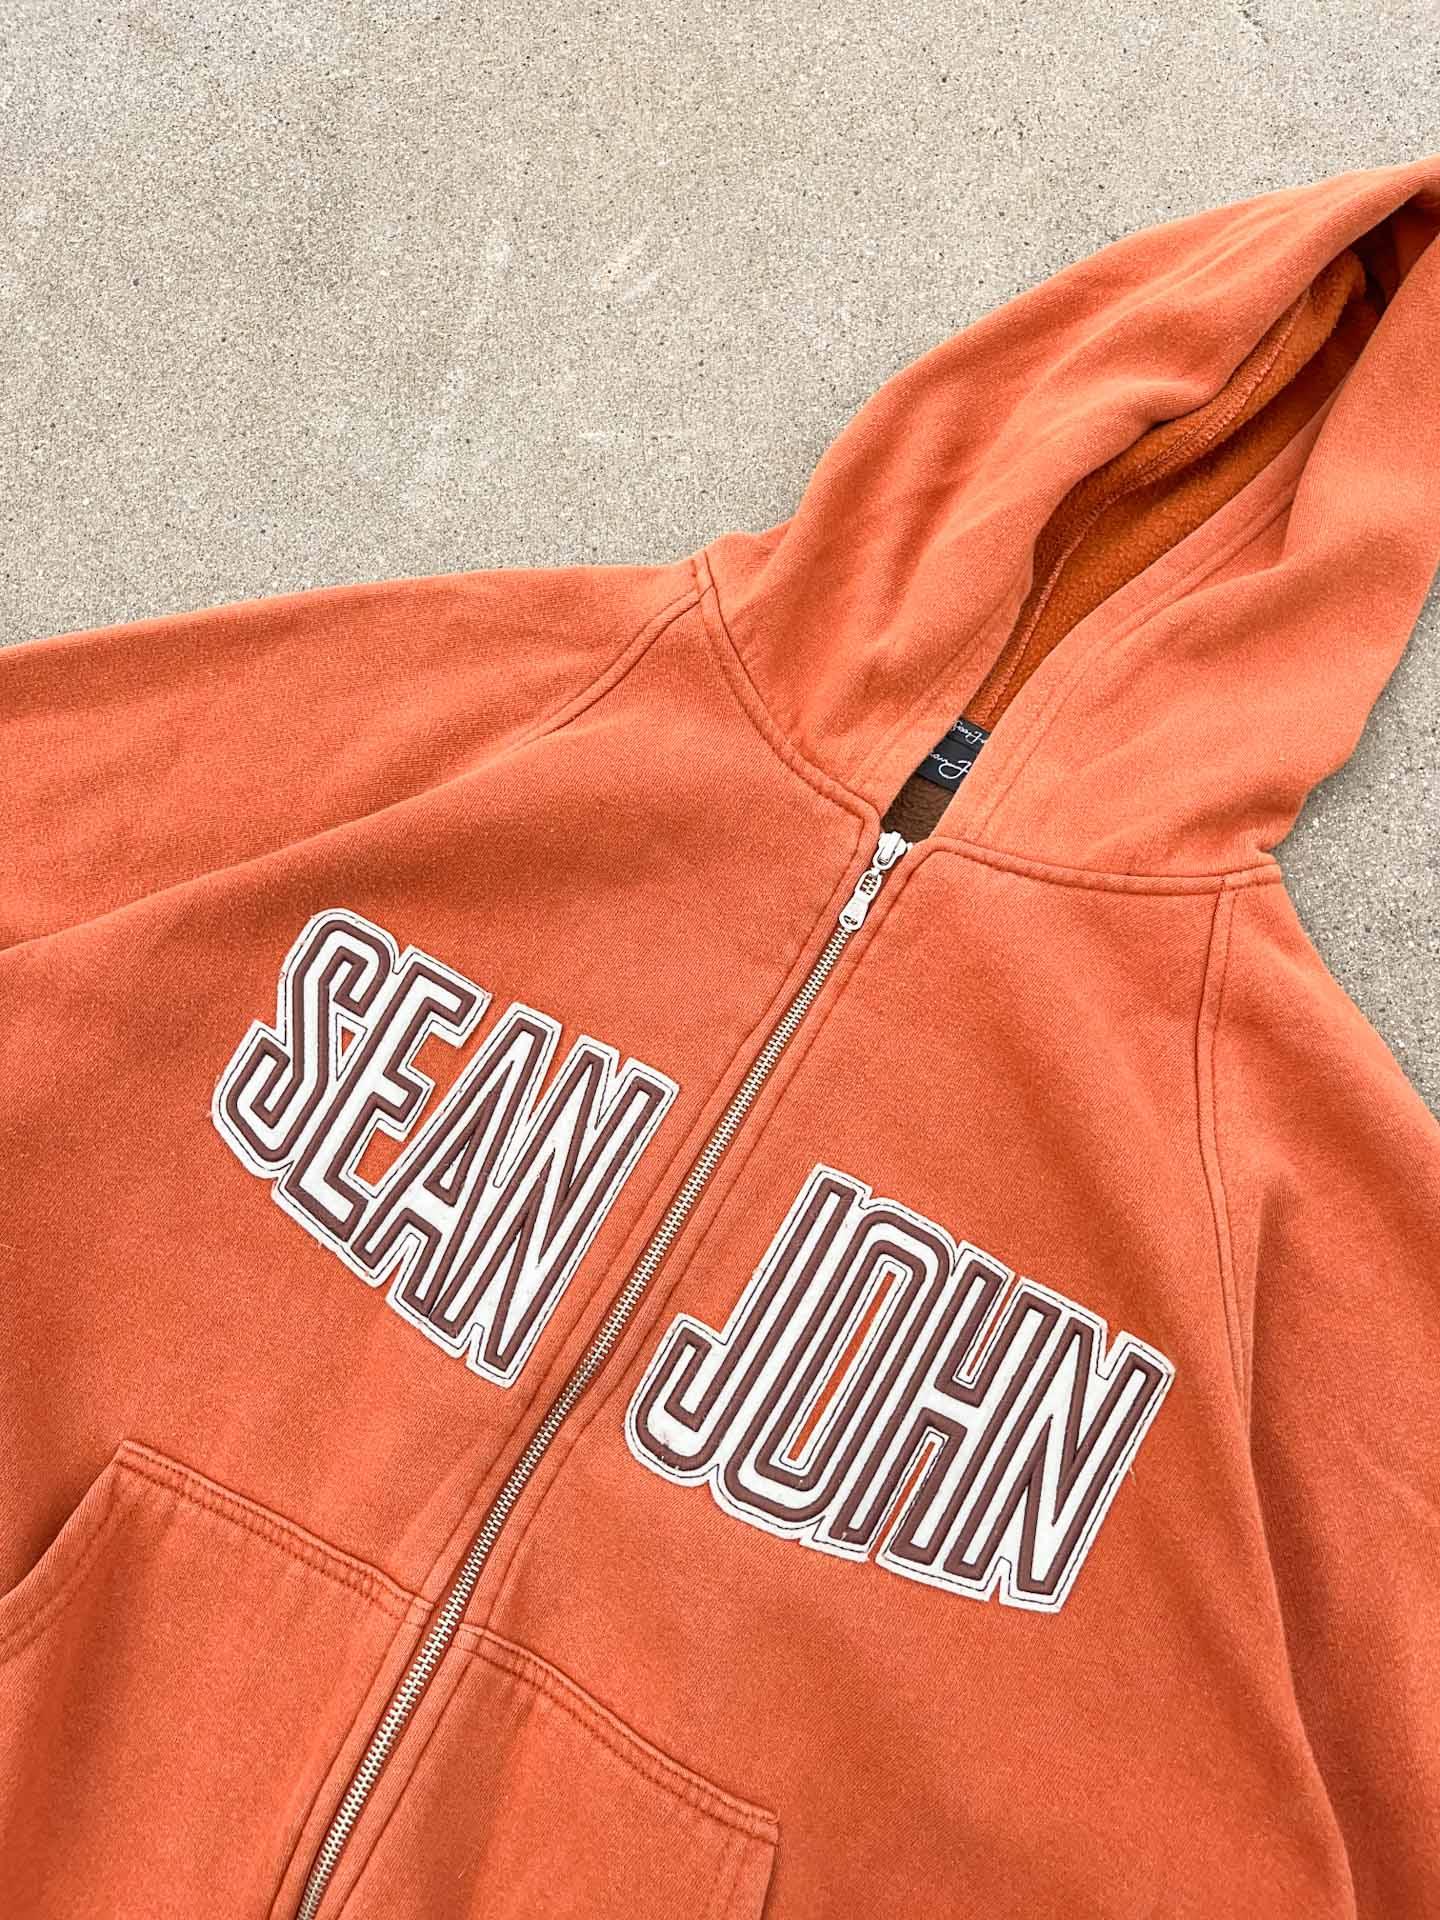 Sean John zip up hoodie oversize - secondvintage